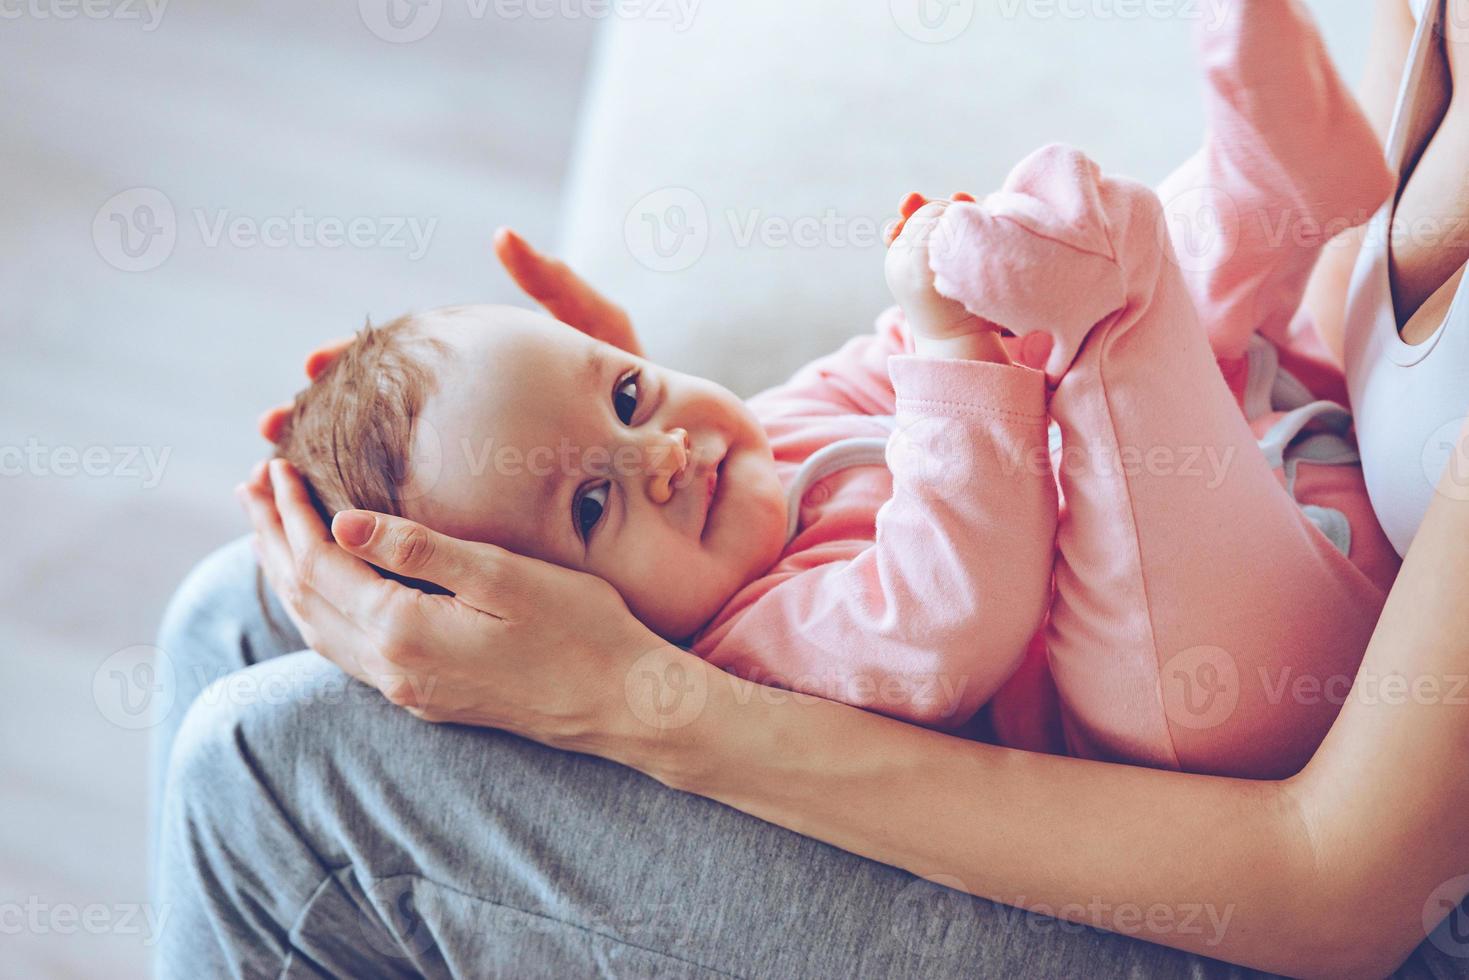 pequeno tesouro. close-up vista lateral da jovem segurando a menina sorridente de joelhos enquanto está sentado no sofá foto